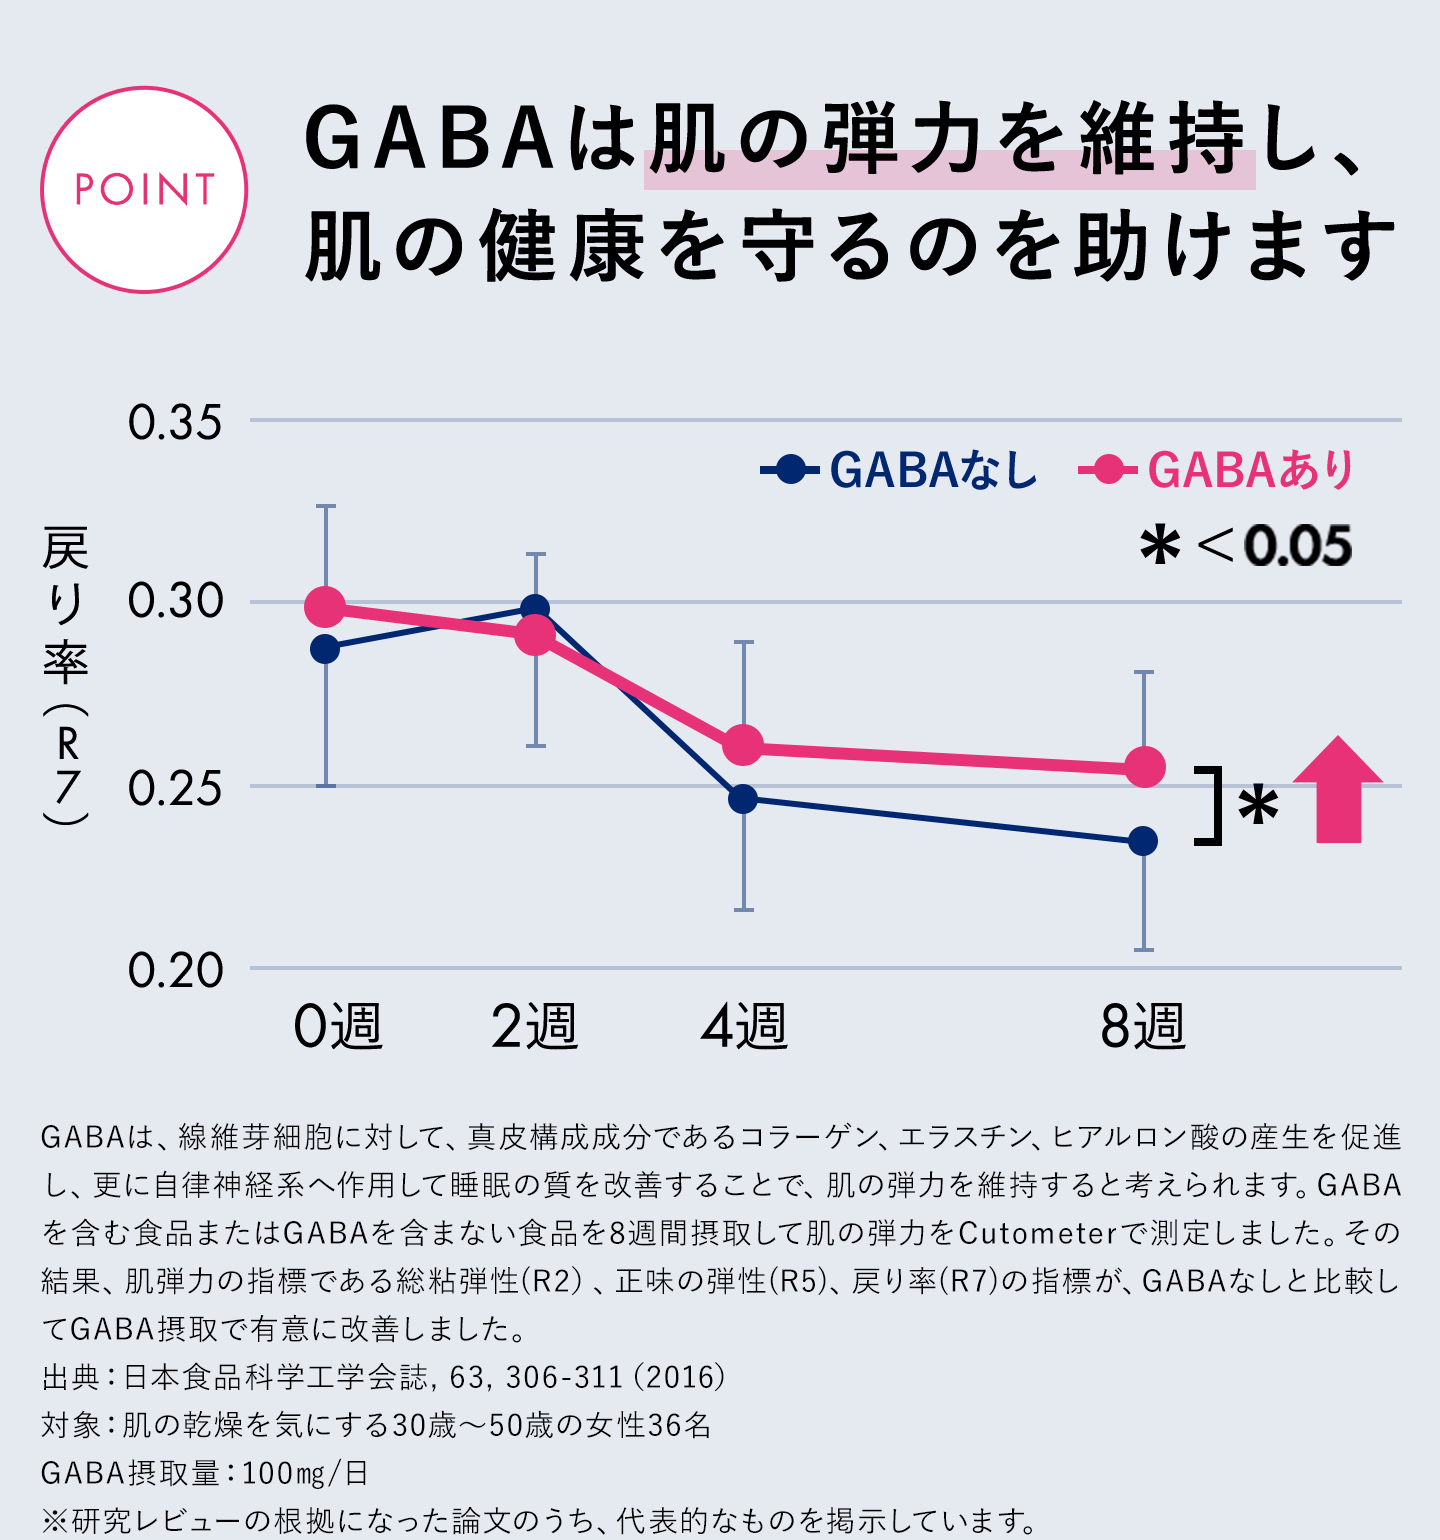 GABAは肌の弾力を維持し、肌の健康を守るのを助けます